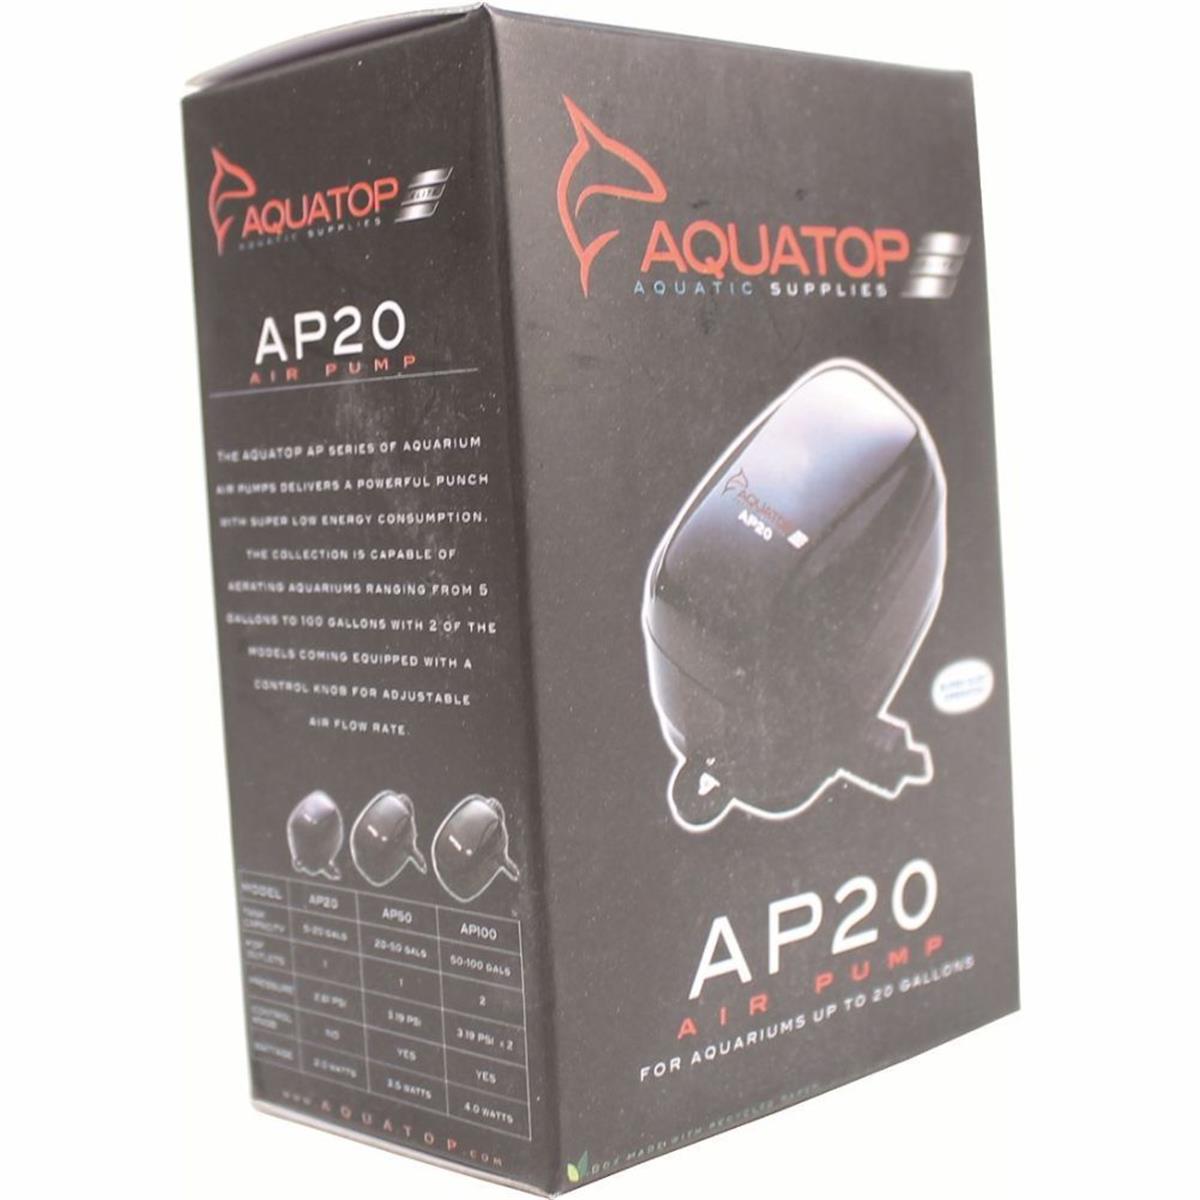 Picture of Aquatop Aquatic Supplies 003535 5-20 gal Single Outlet Aquarium Air Pump - Black